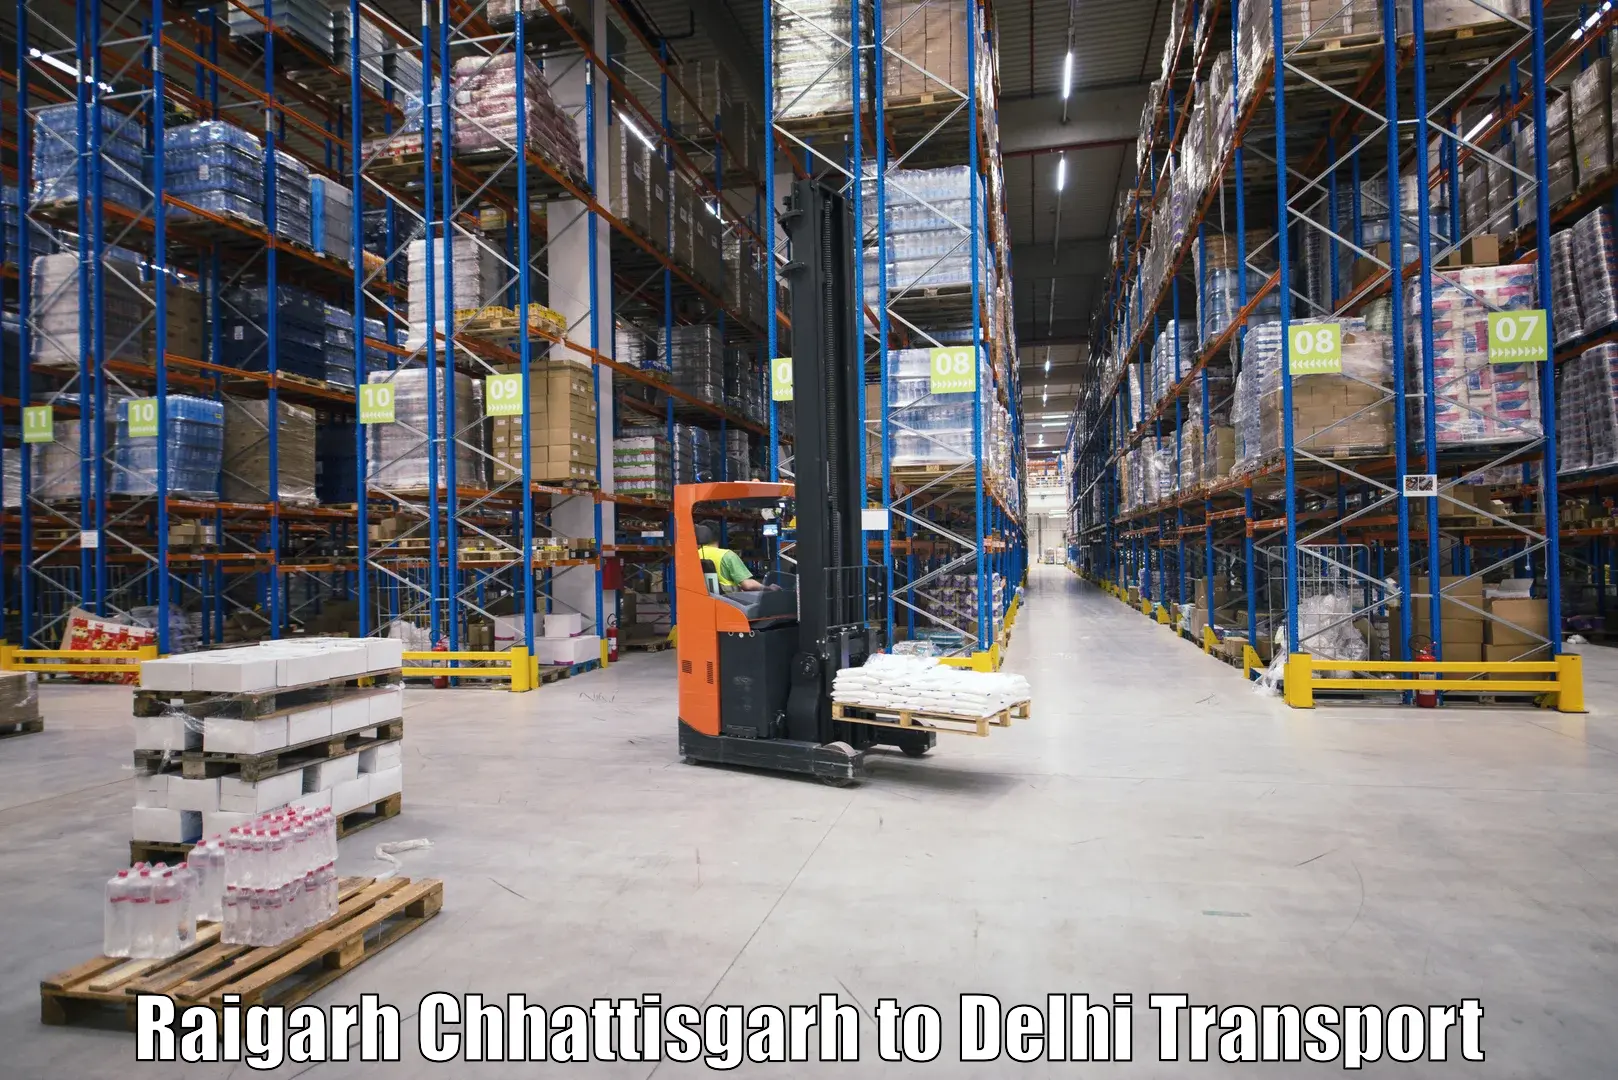 All India transport service Raigarh Chhattisgarh to Delhi